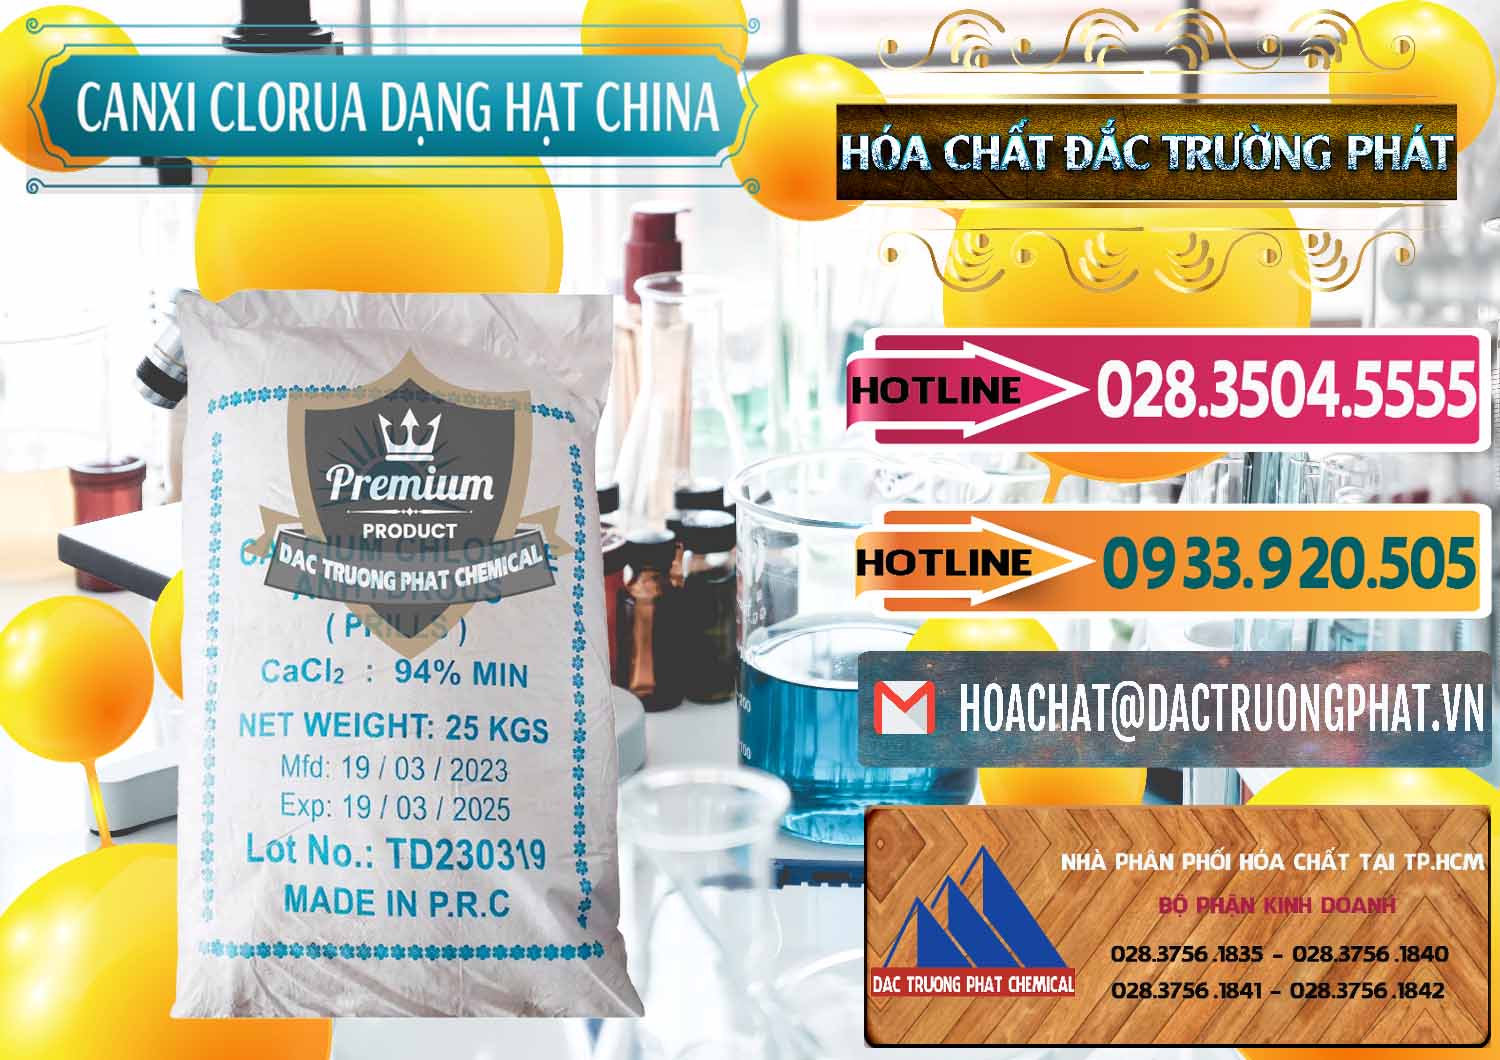 Cty chuyên bán & cung ứng CaCl2 – Canxi Clorua 94% Dạng Hạt Trung Quốc China - 0373 - Đơn vị cung cấp _ kinh doanh hóa chất tại TP.HCM - dactruongphat.vn